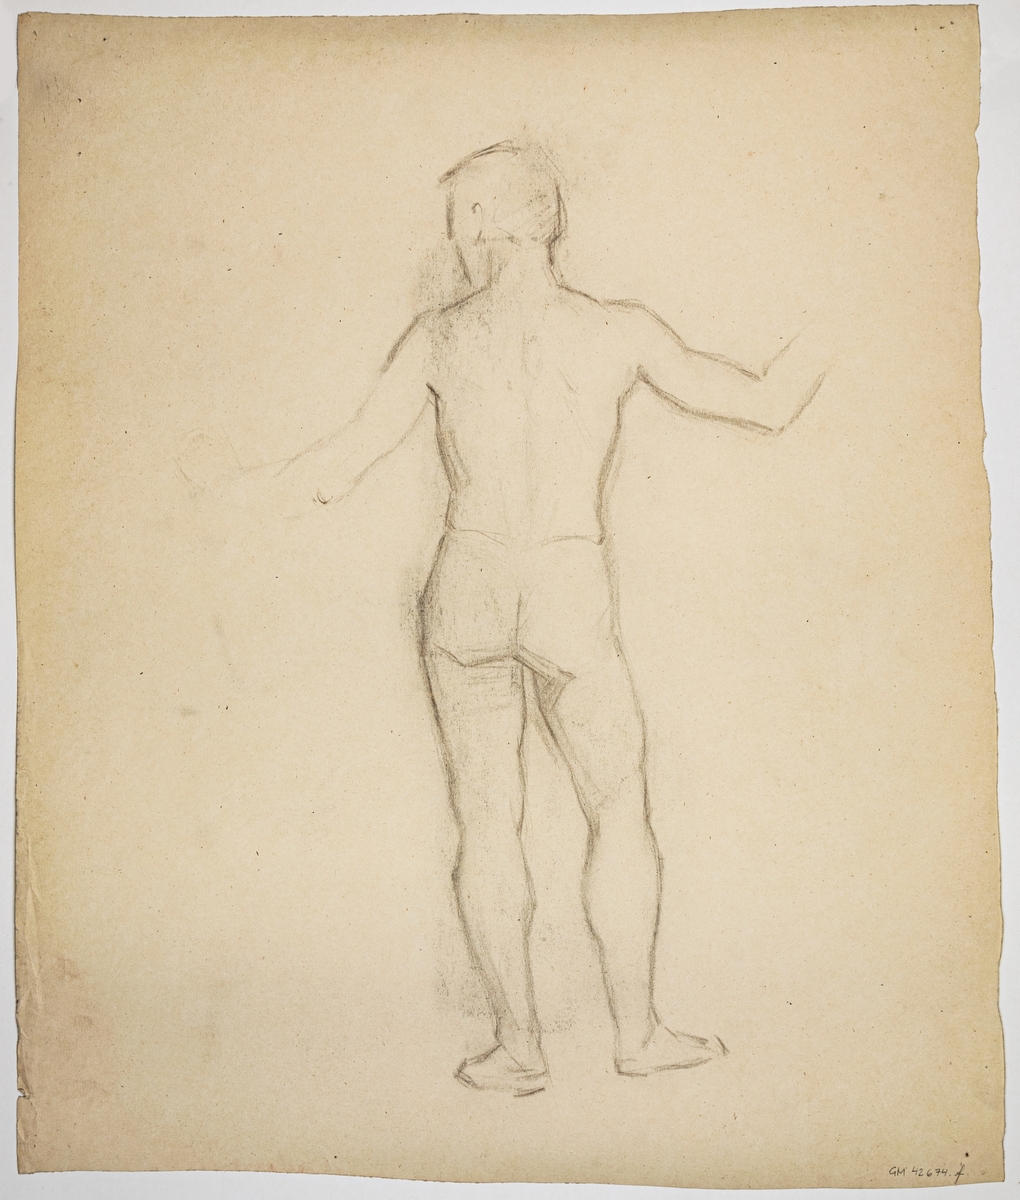 Modellstudie av naken kvinna, sittande. Signerad Ida von Schulzenheim. 
Övrig påskrift: Nov 1881 FrRg
På baksidan skissartad ryggtavla på man.